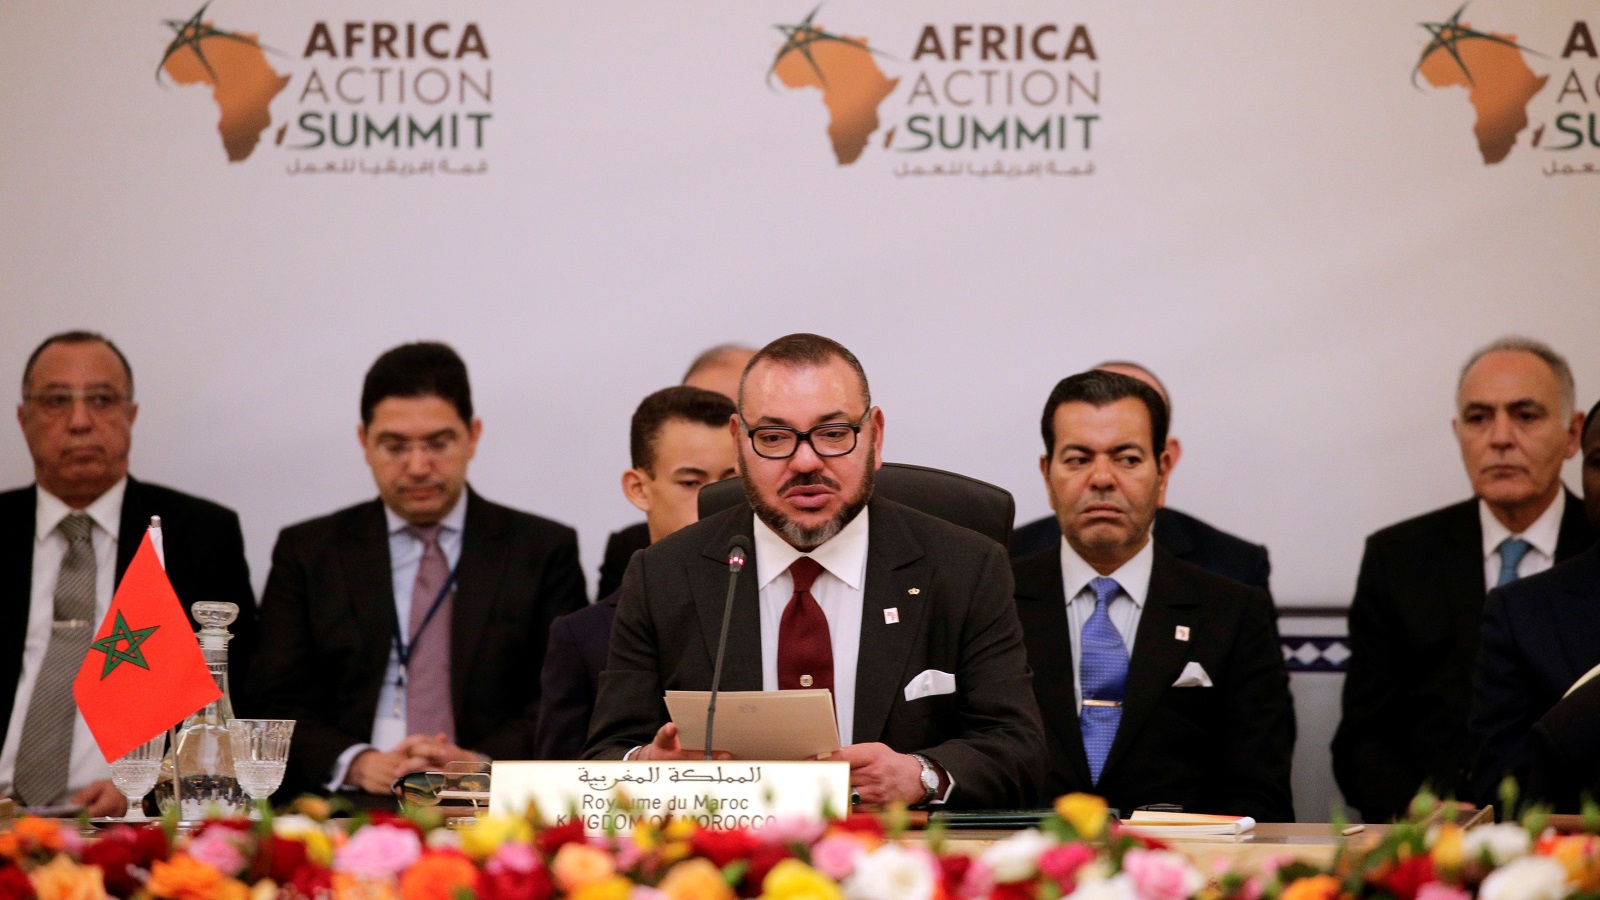 وقعَّ المغرب منذ انطلاق الألفية الجديدة حوالي ألف معاهدة واتفاقية مع مختلف بلدان القارة الأفريقية، وقام الملك بـ 46 زيارة لـ 25 دولة أفريقية في نفس الفترة (رويترز)